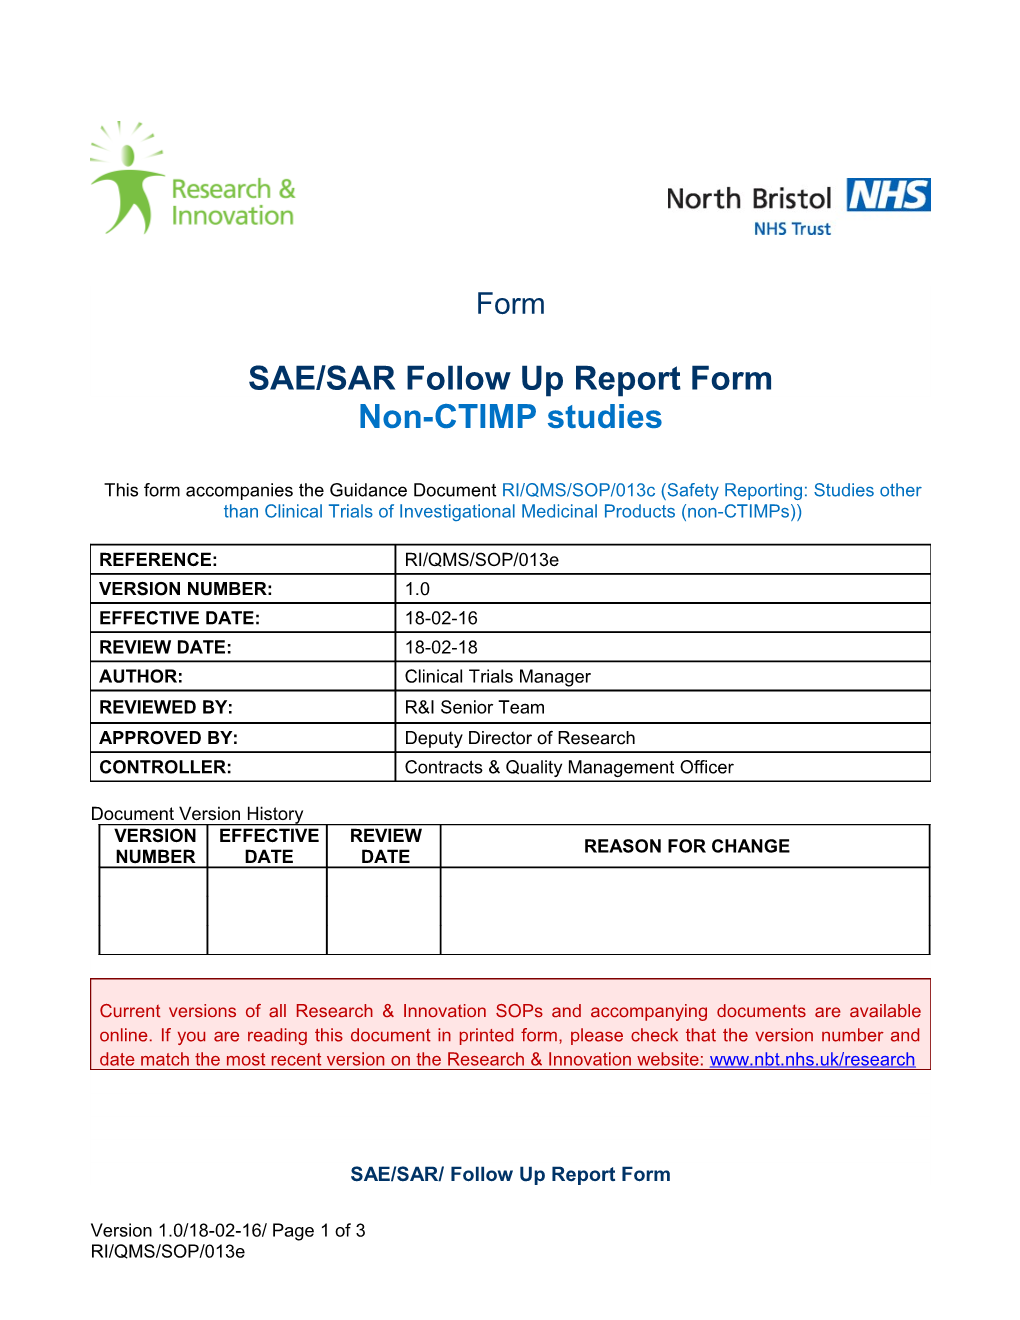 SAE/SAR/ Follow up Report Form